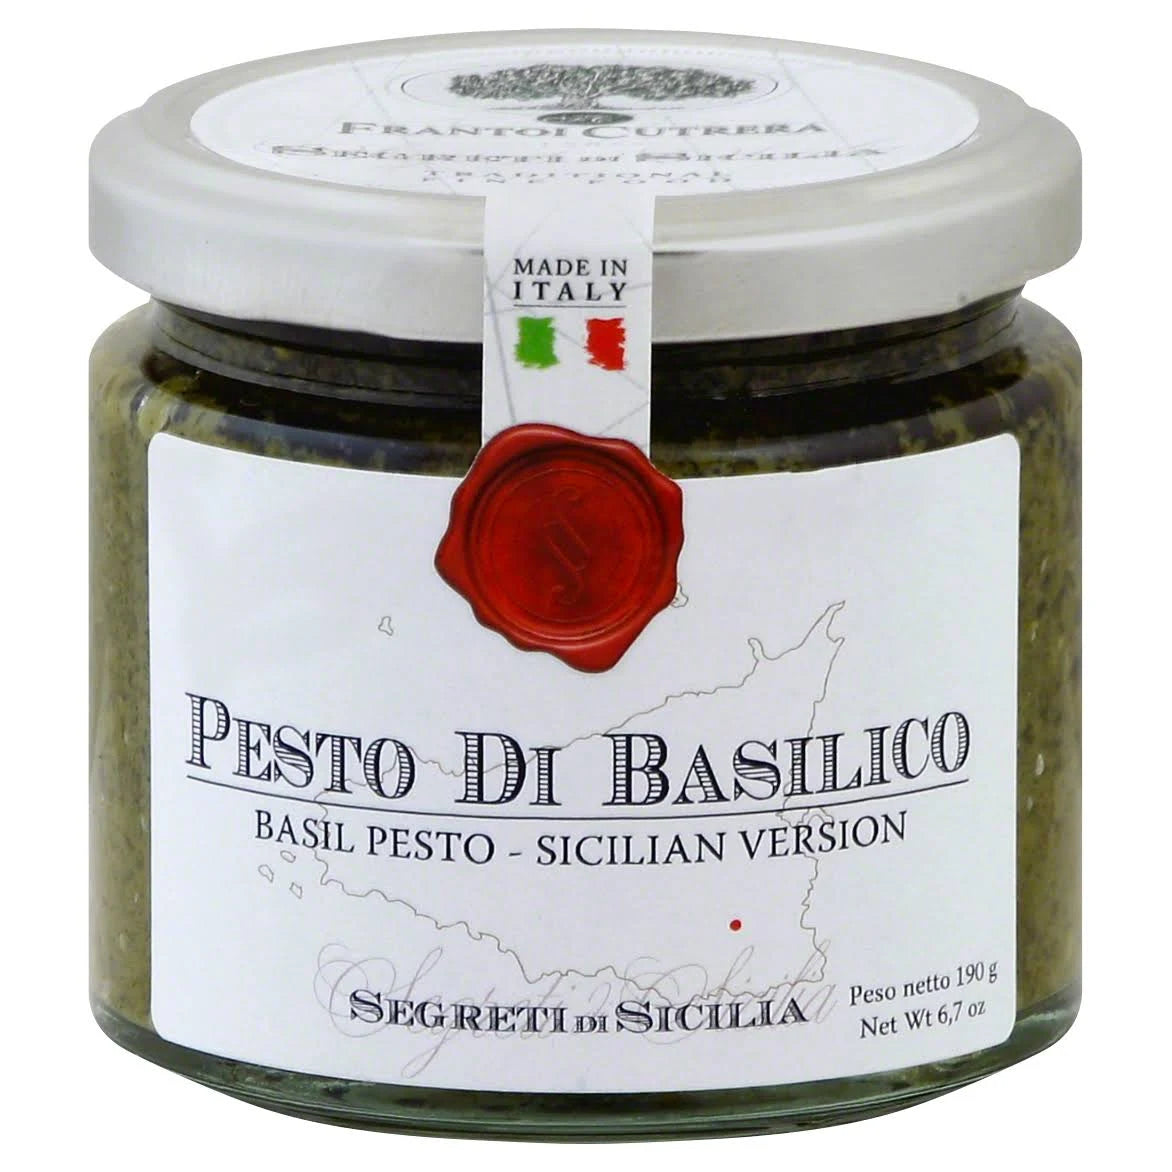 Sicilian Basil Pesto, Segreti Di Sicily, 6.7 oz